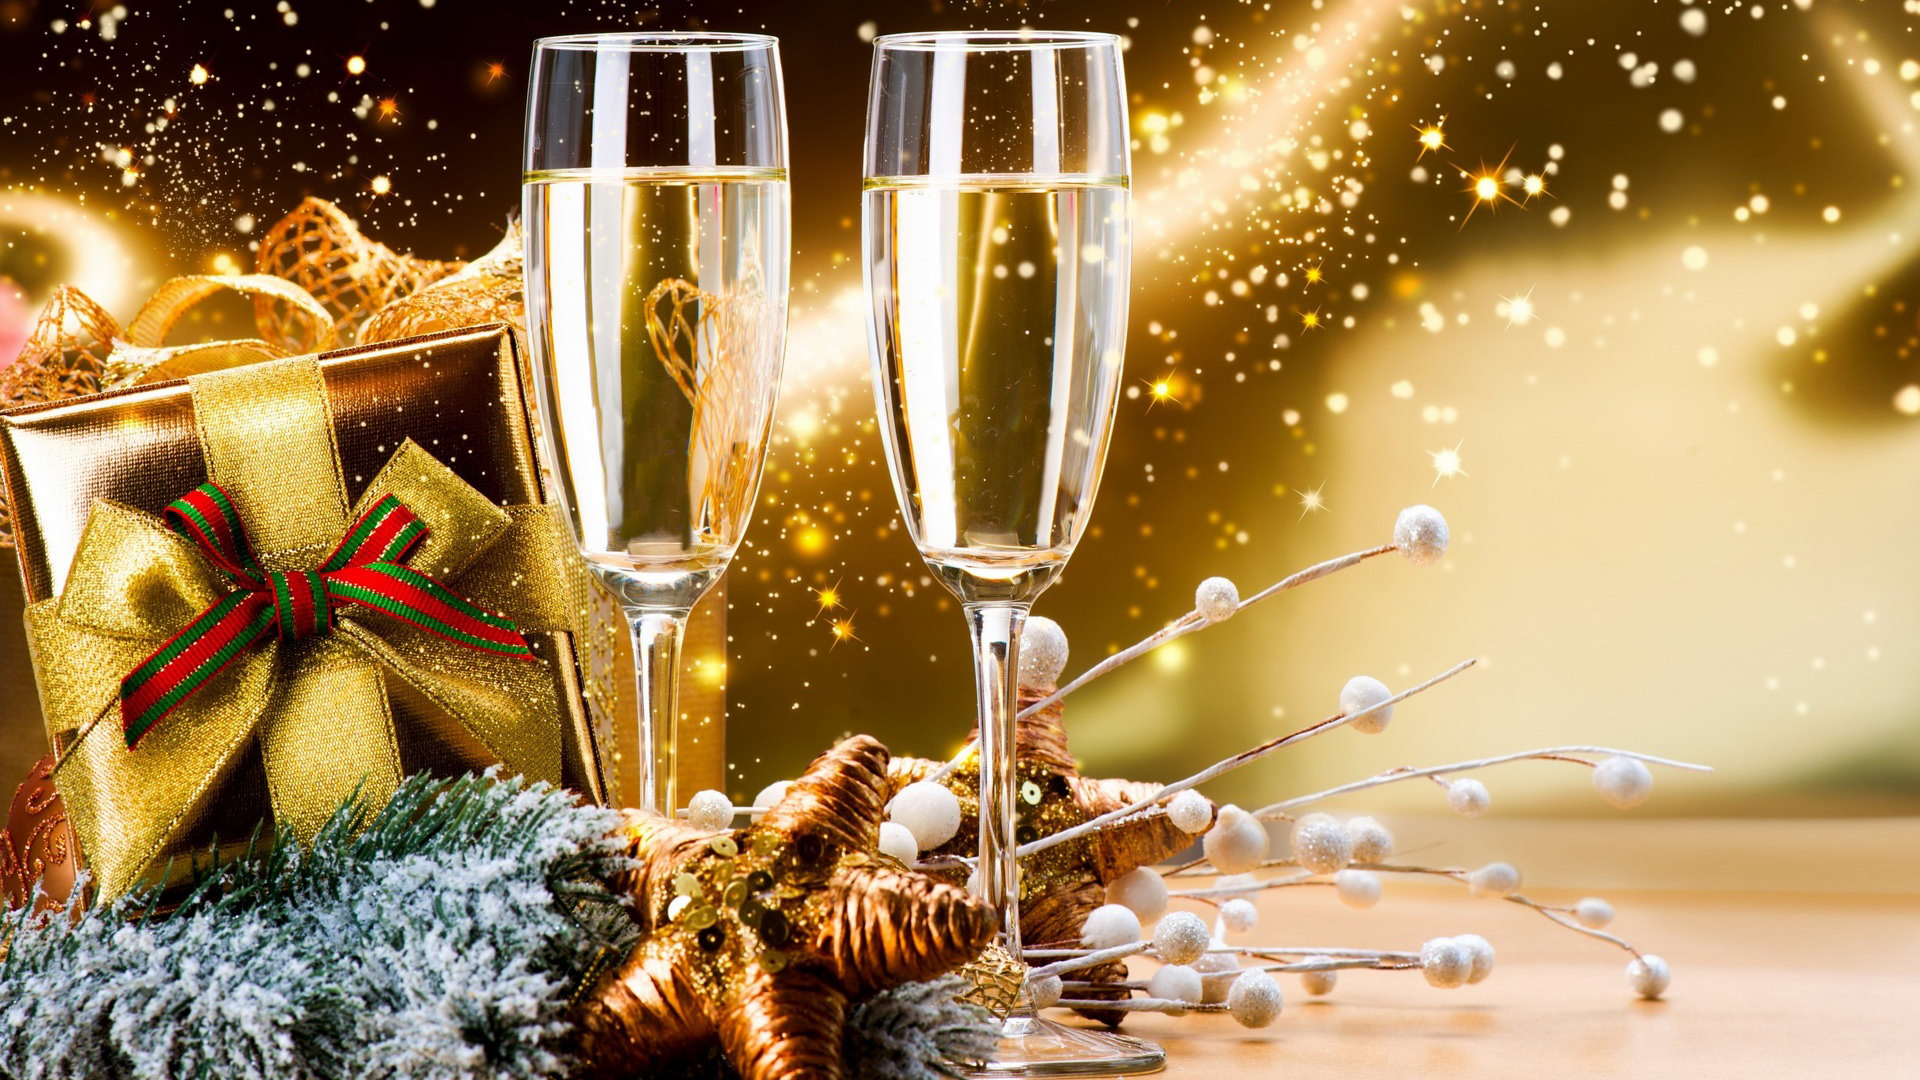 새해 복 많이 받으세요 hd 벽지,샴페인,음주,샴페인 유리 잔,설날,알코올 음료